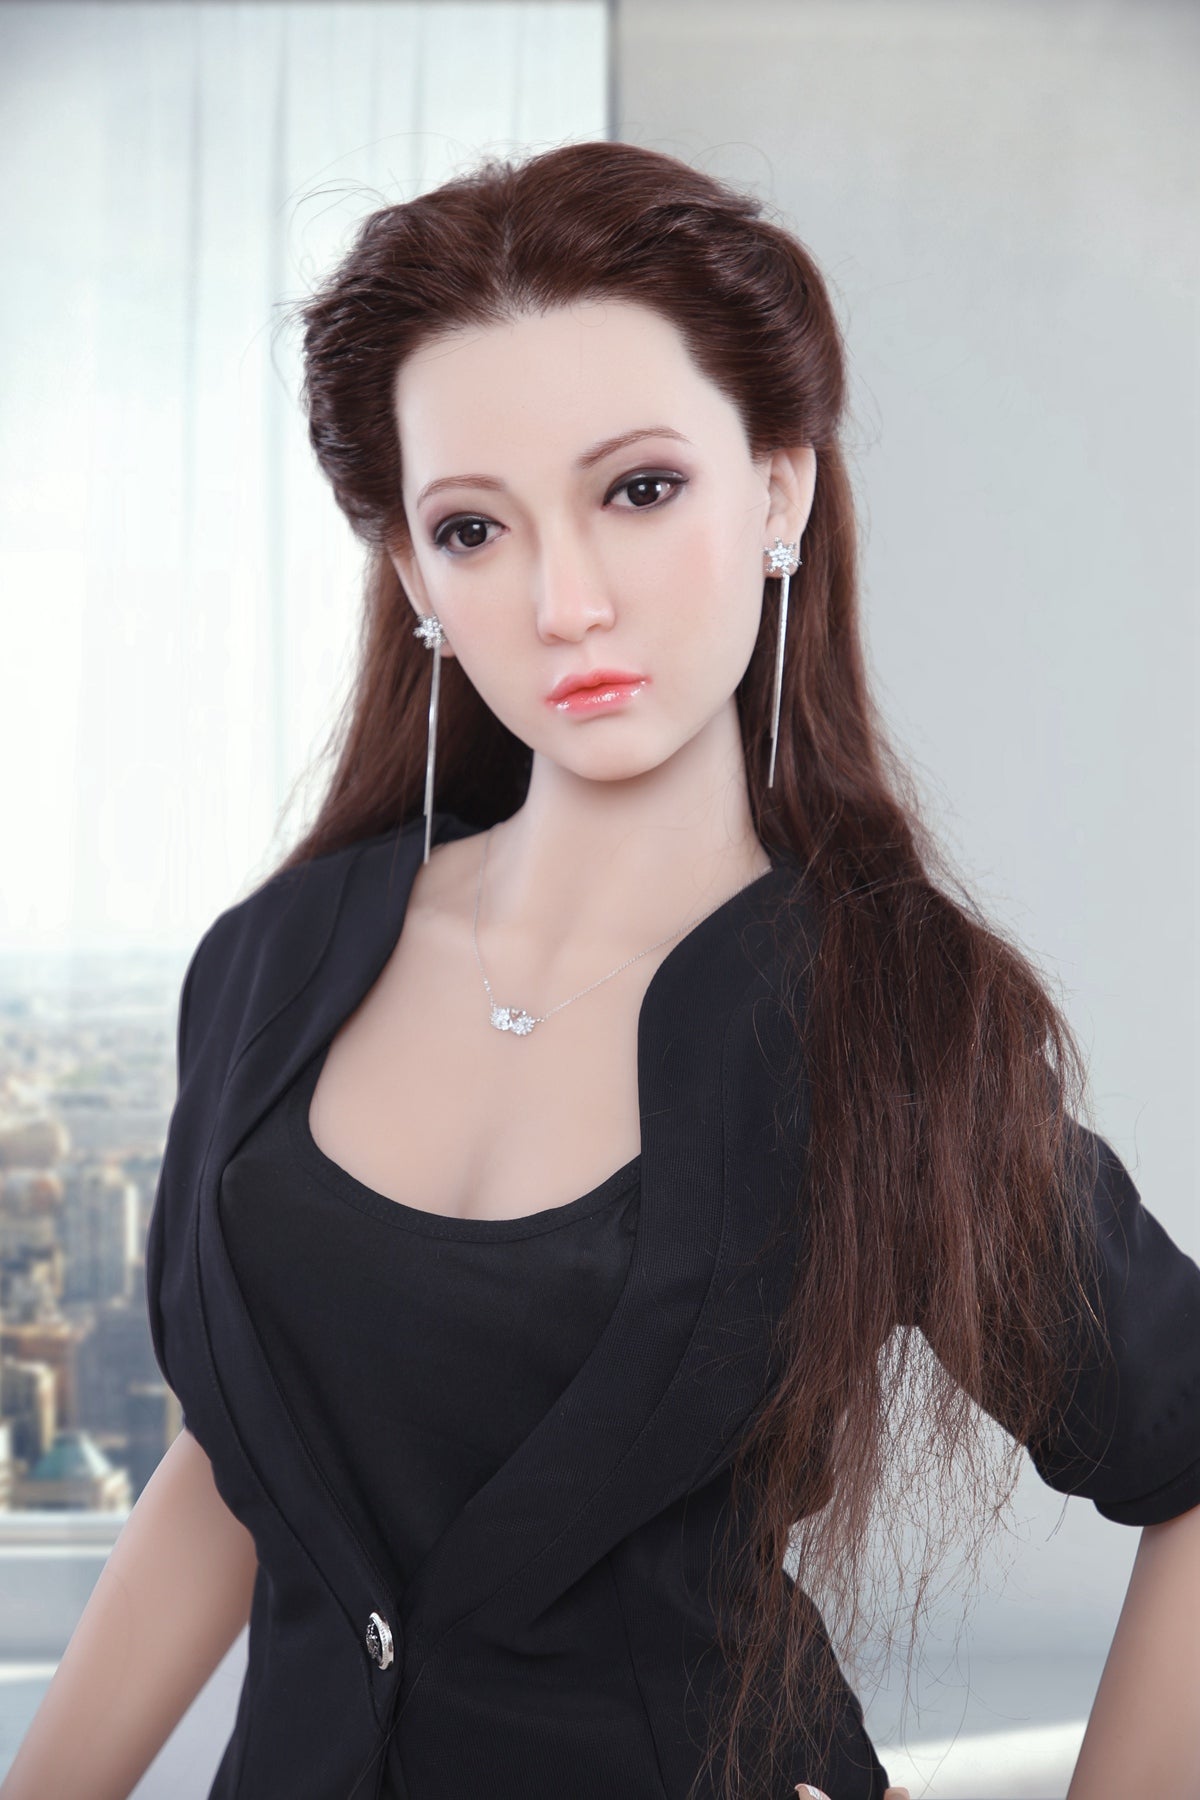 160cm Adult Sex Dolls Silicone Head- Wei AF Doll